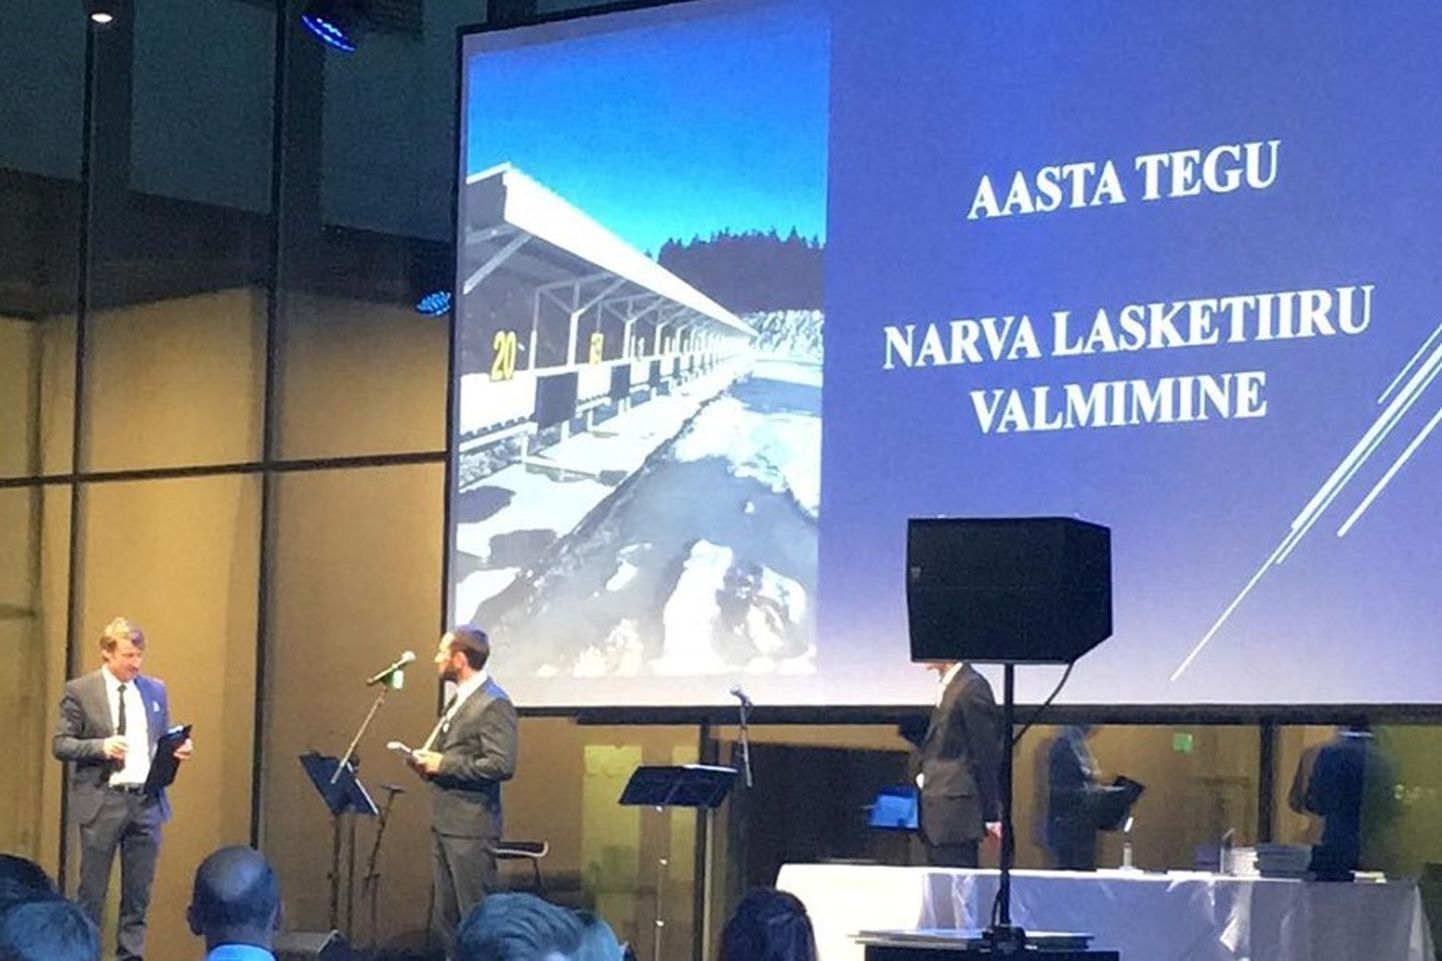 Eesti Laskesuusatamise Föderatsioon valis aasta teoks Narva lasketiiru valmimise.